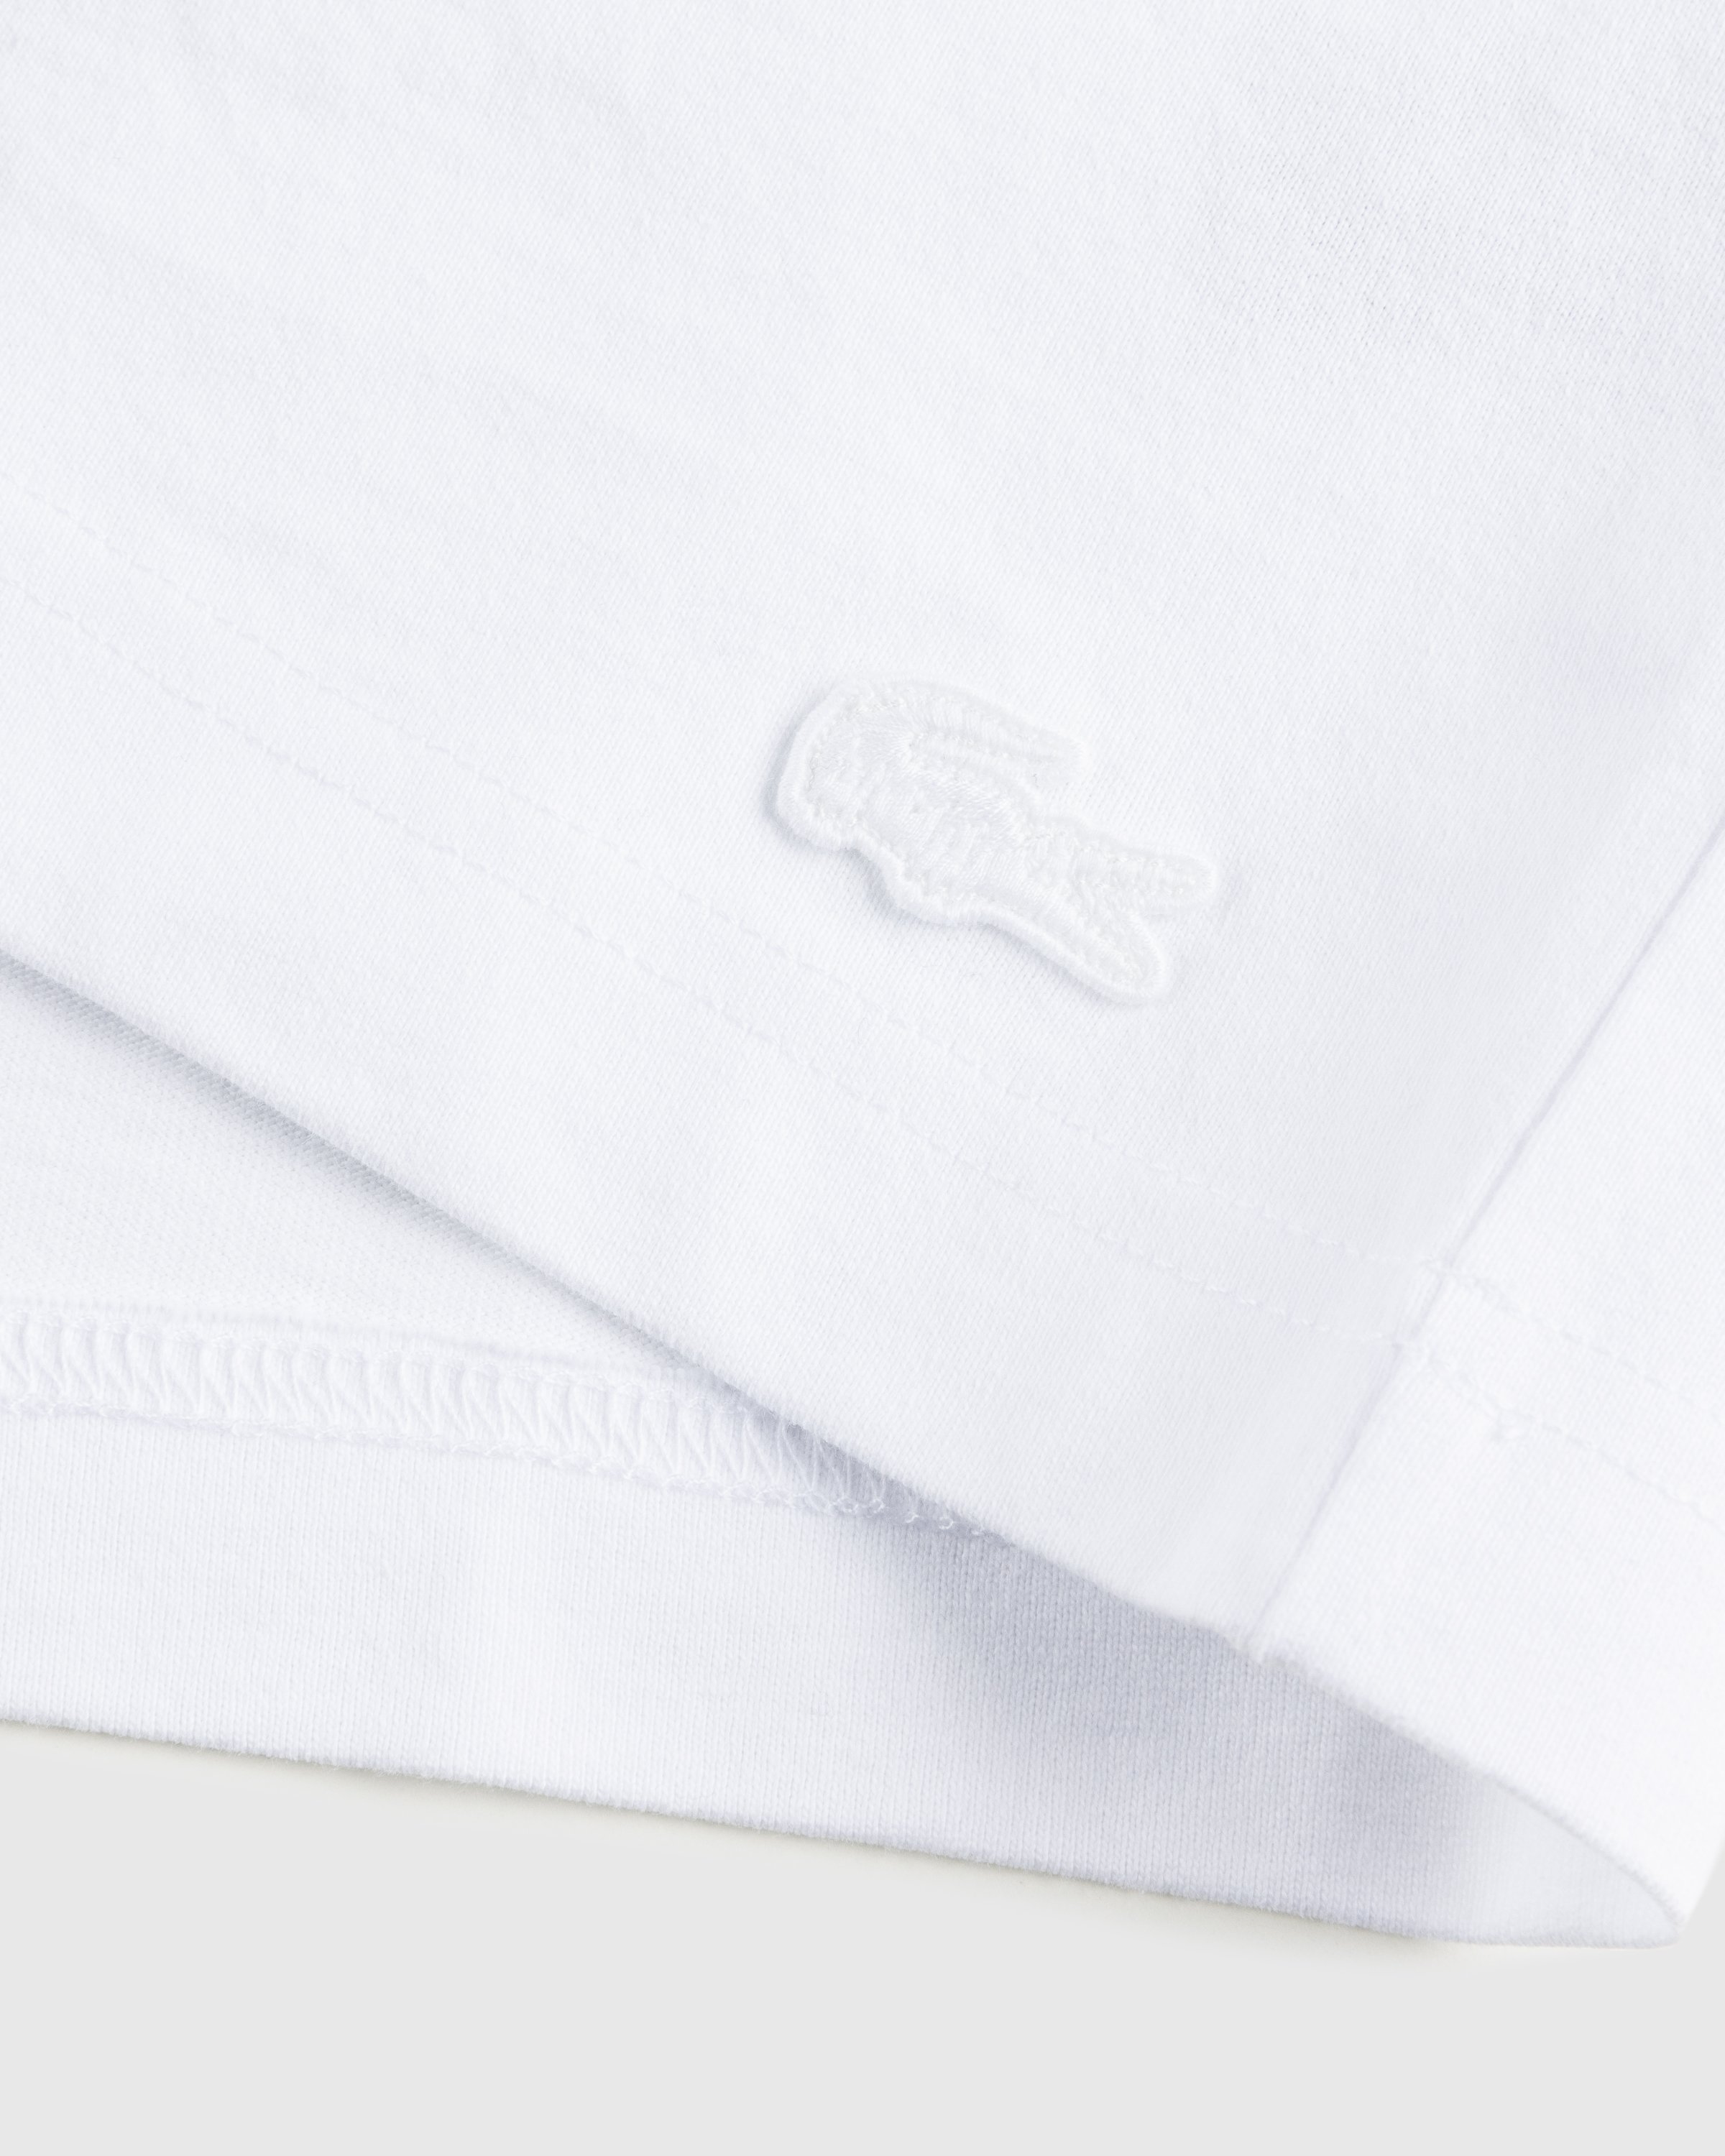 Lacoste x Highsnobiety - White T-Shirt - Clothing - White - Image 4